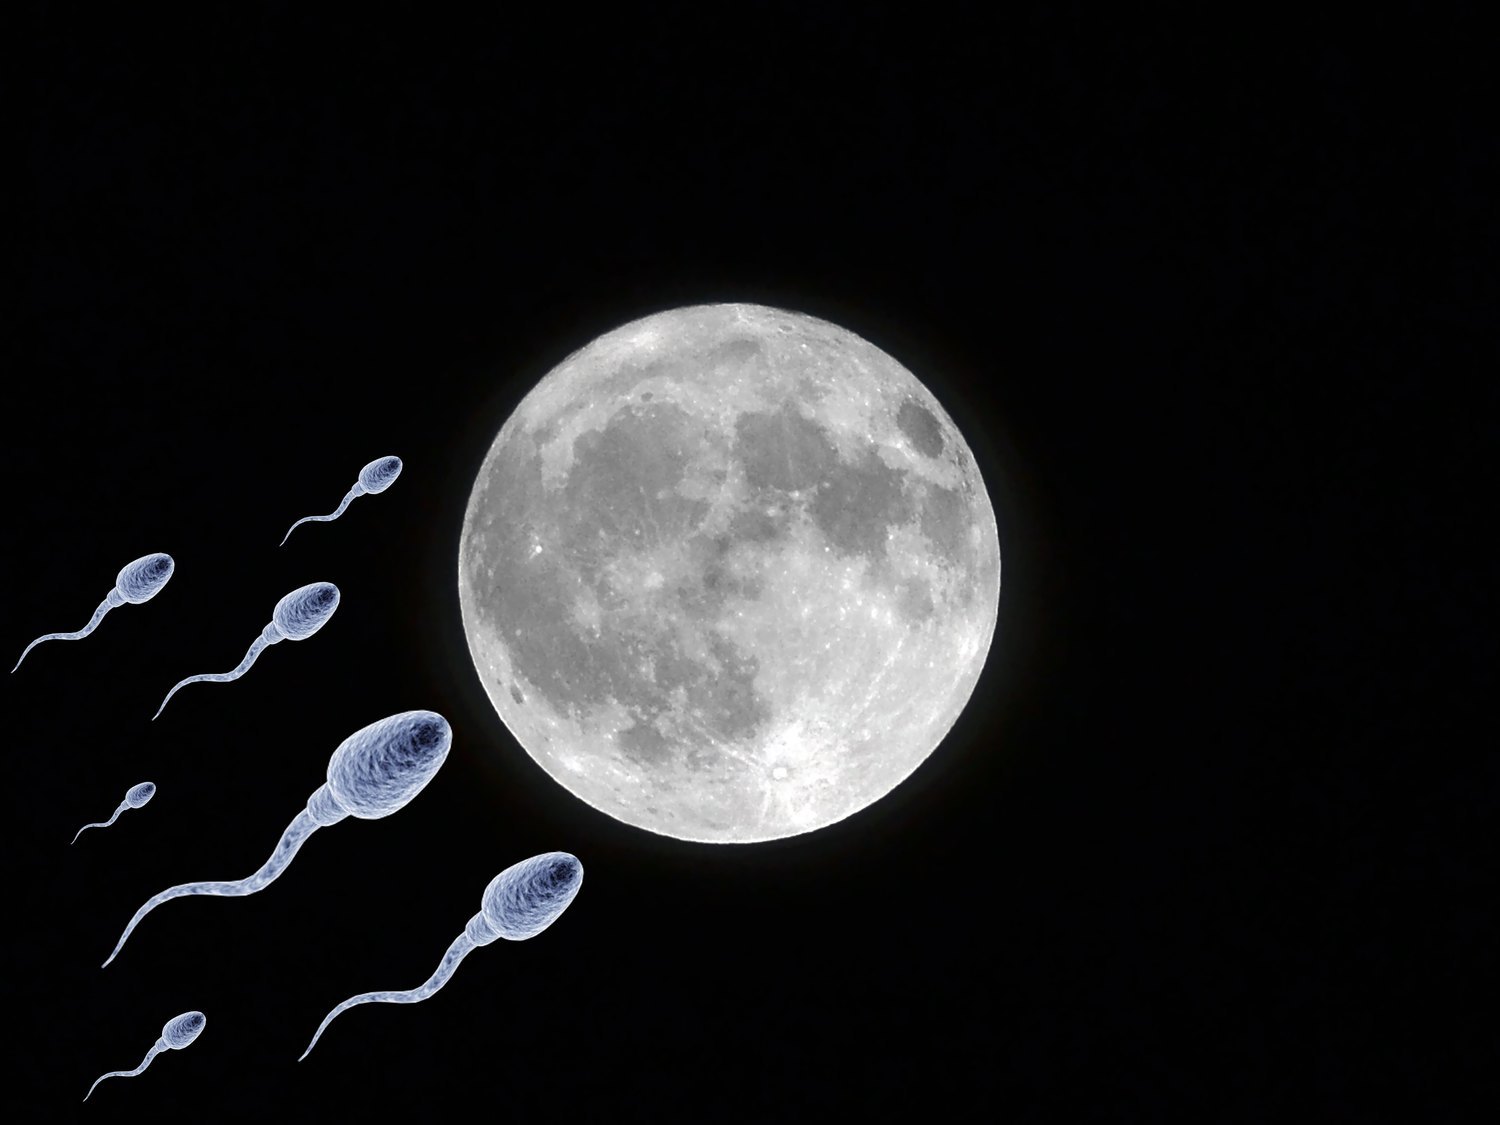 Proponen preservar en la Luna millones de muestras de esperma para asegurar la supervivencia humana